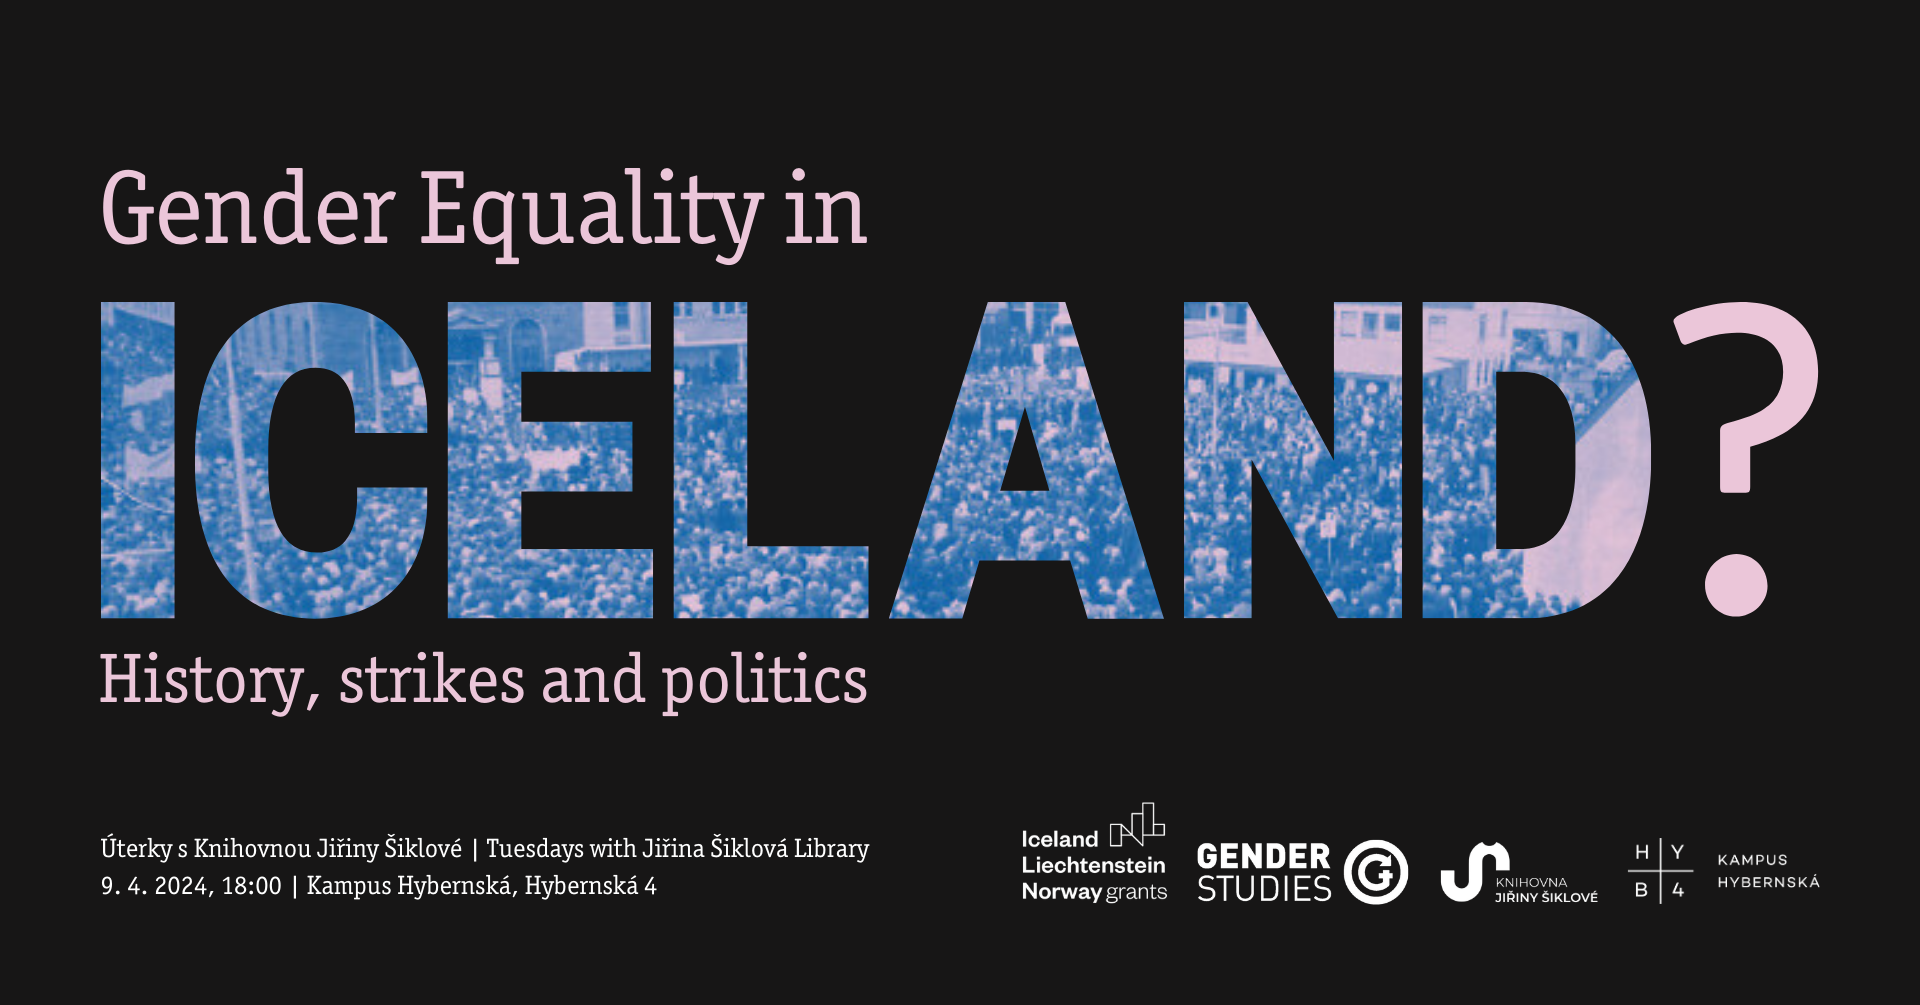 Úterky s KJŠ -- Tuesdays With JŠL | Gender Equality in Iceland? History, Strikes, and Politics